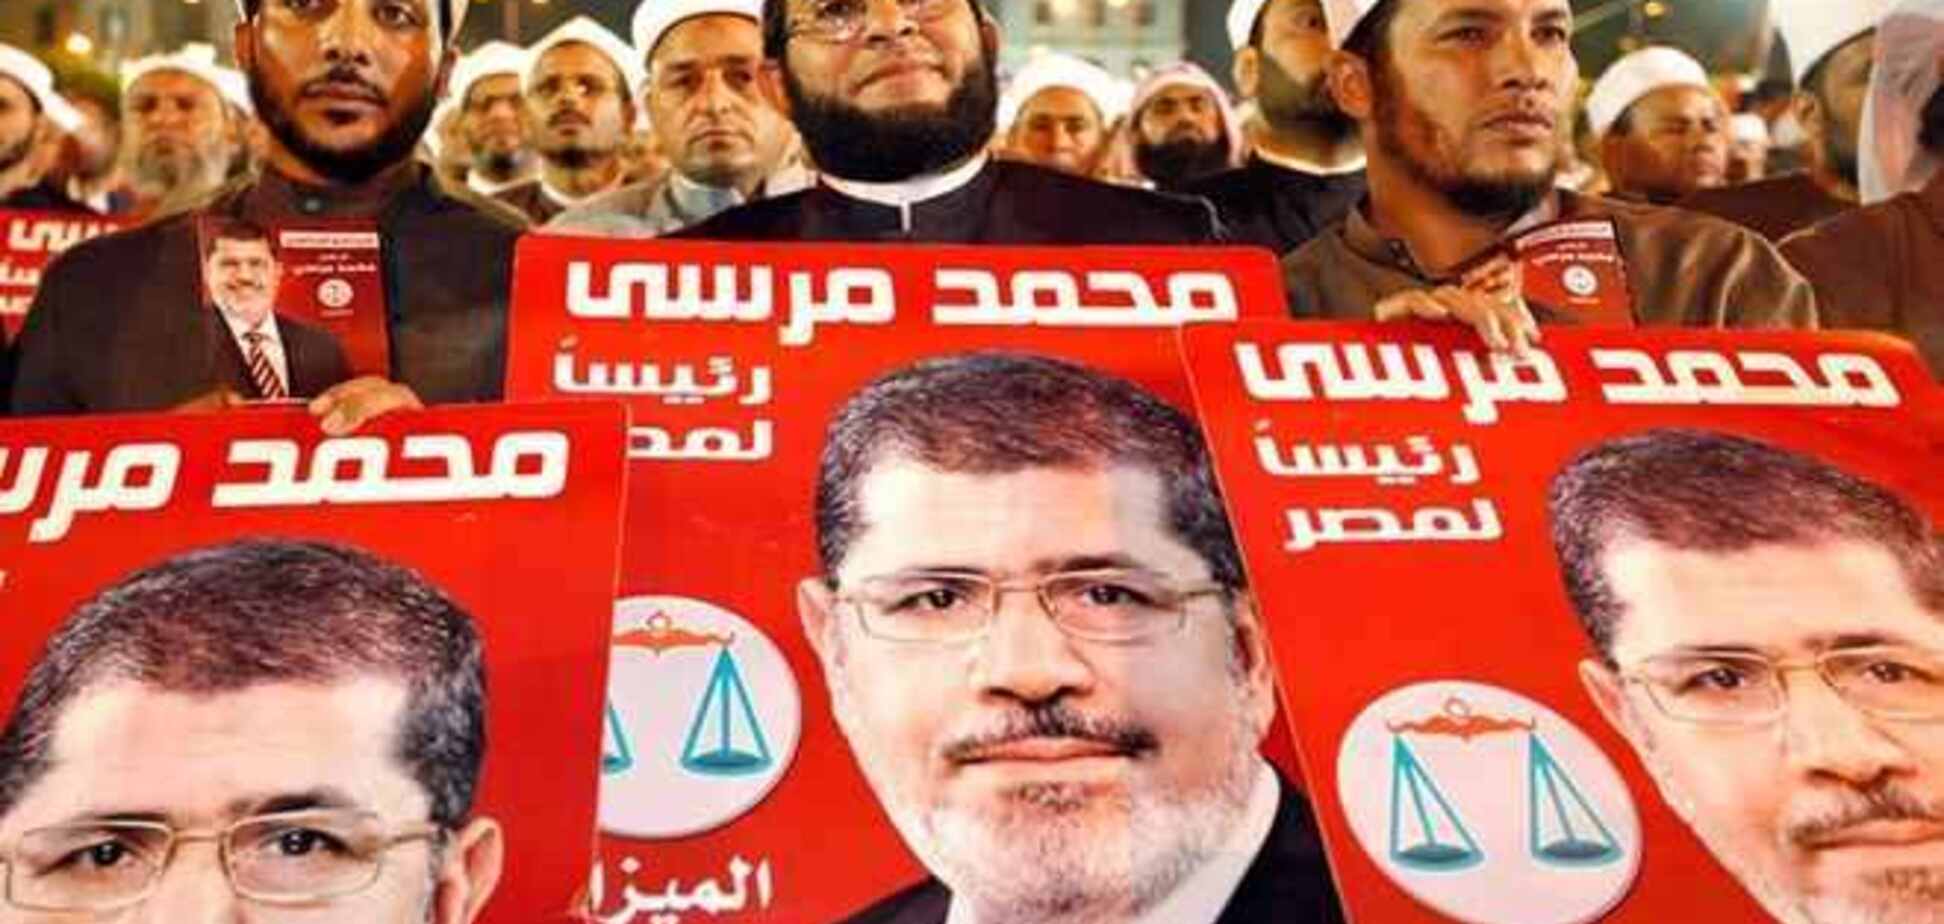 В Египте военным приказали покончить с протестами сторонников Мурси